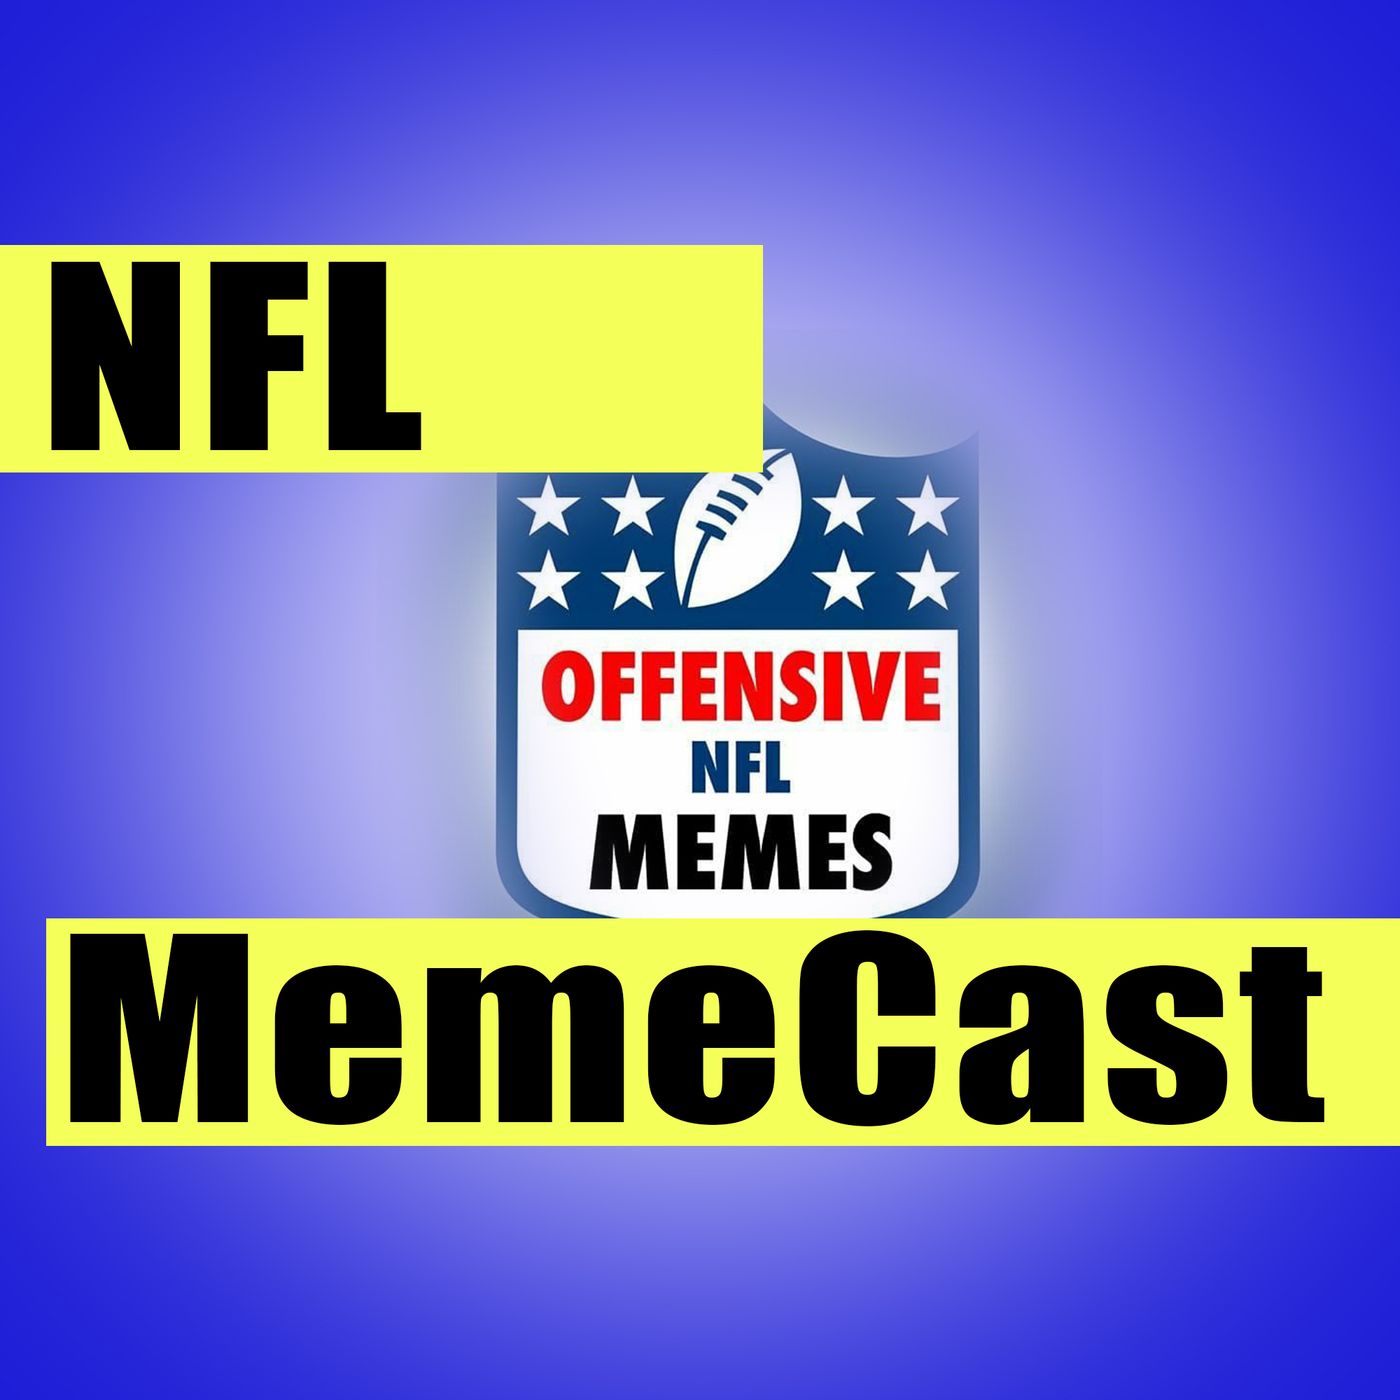 NFL MemeCast